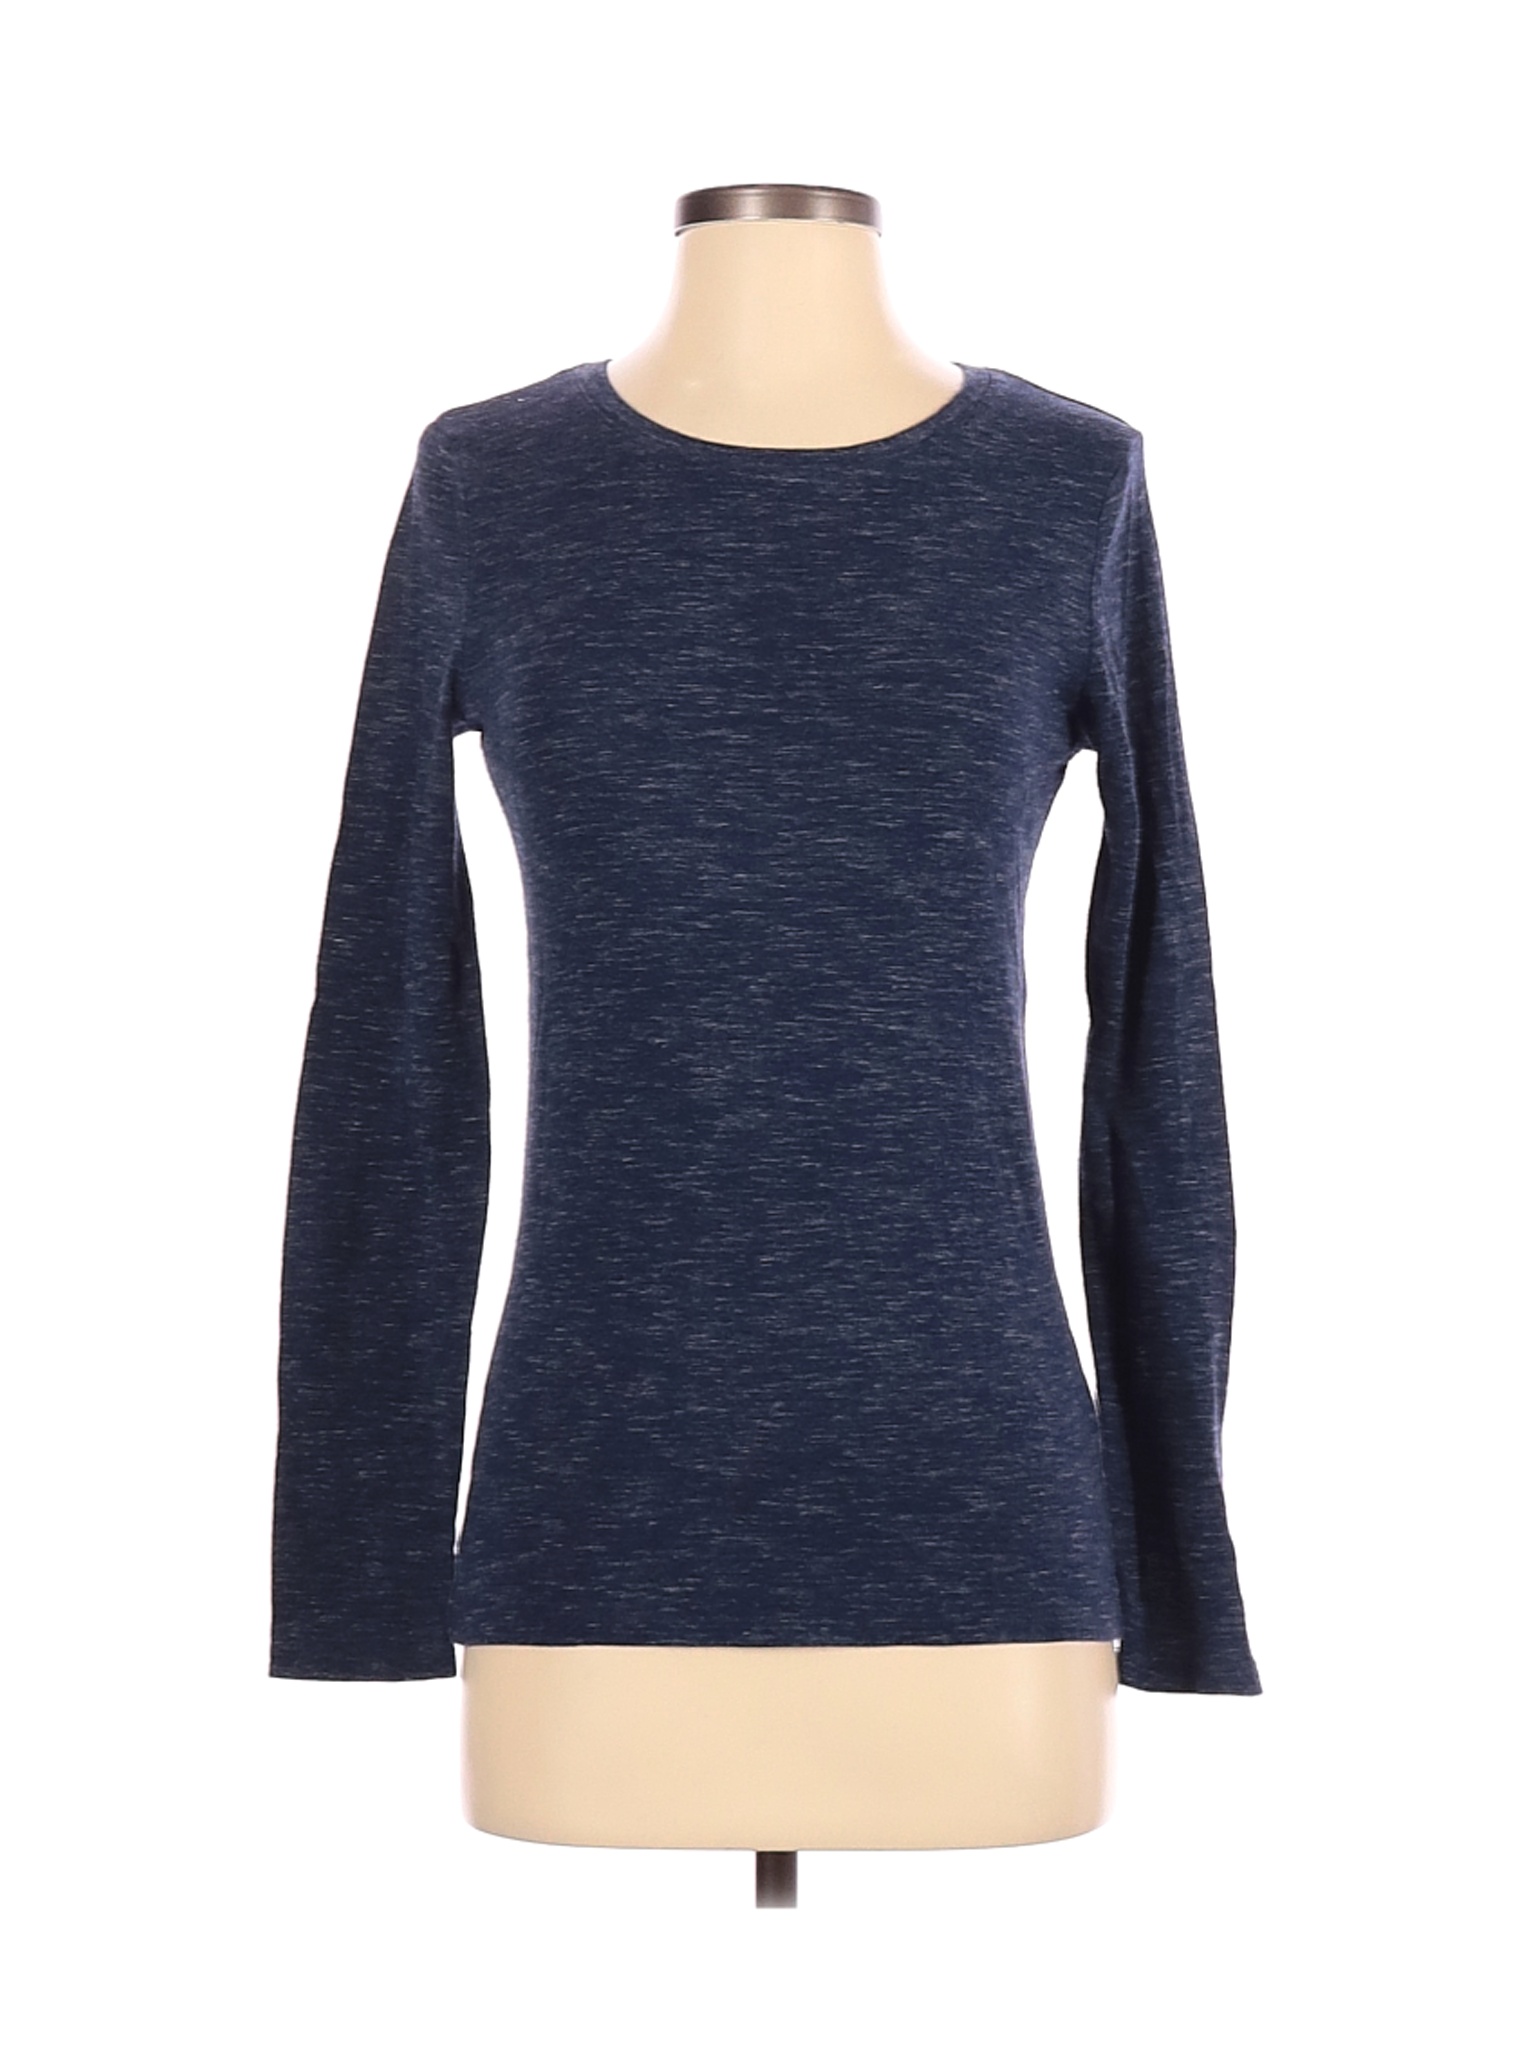 A New Day Women Blue Long Sleeve T-Shirt S | eBay